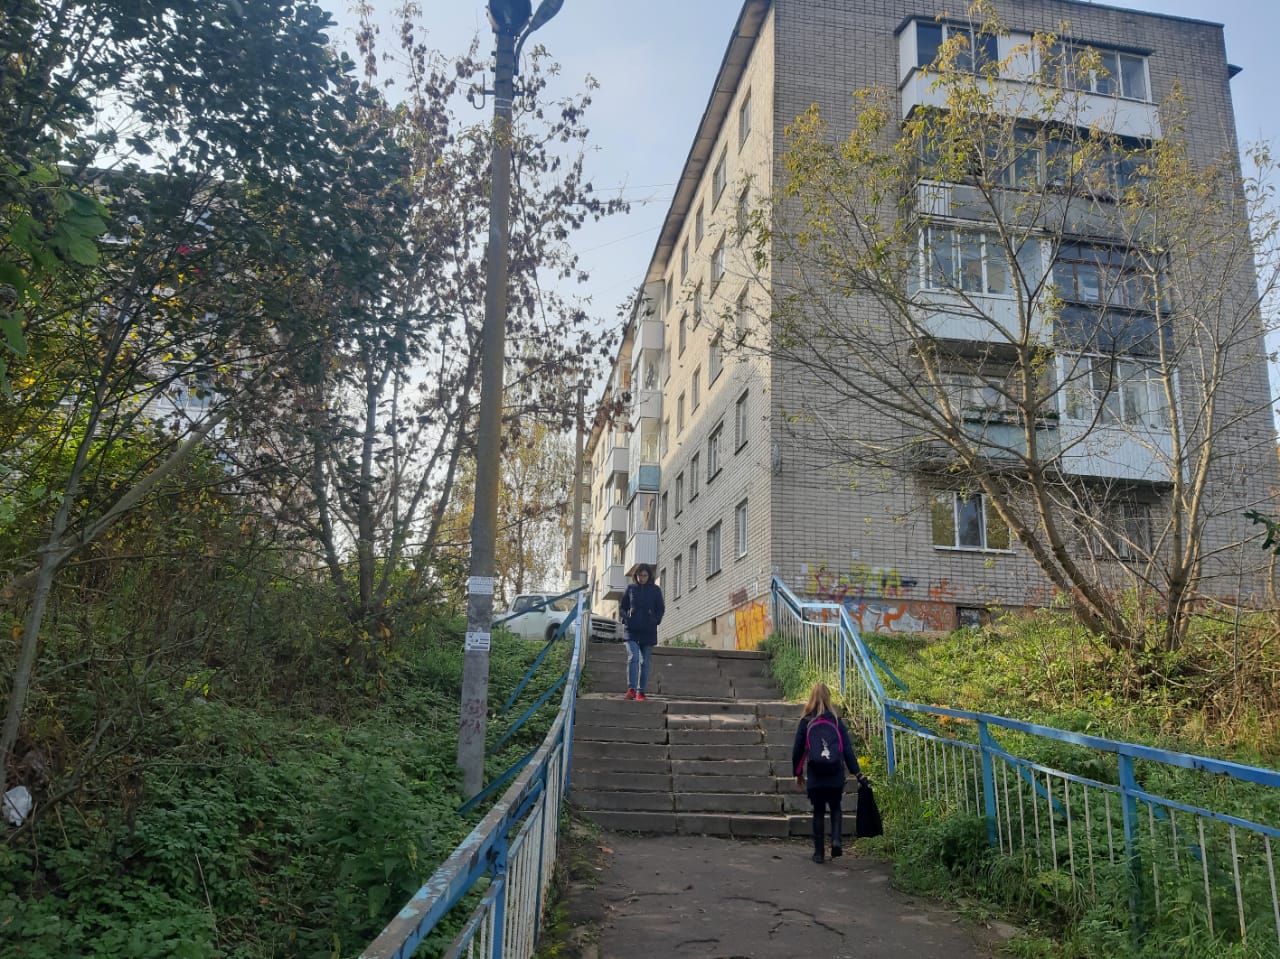 Маршрут к школе №39 и поликлинике №4 в Смоленске представляет опасность для детей и взрослых